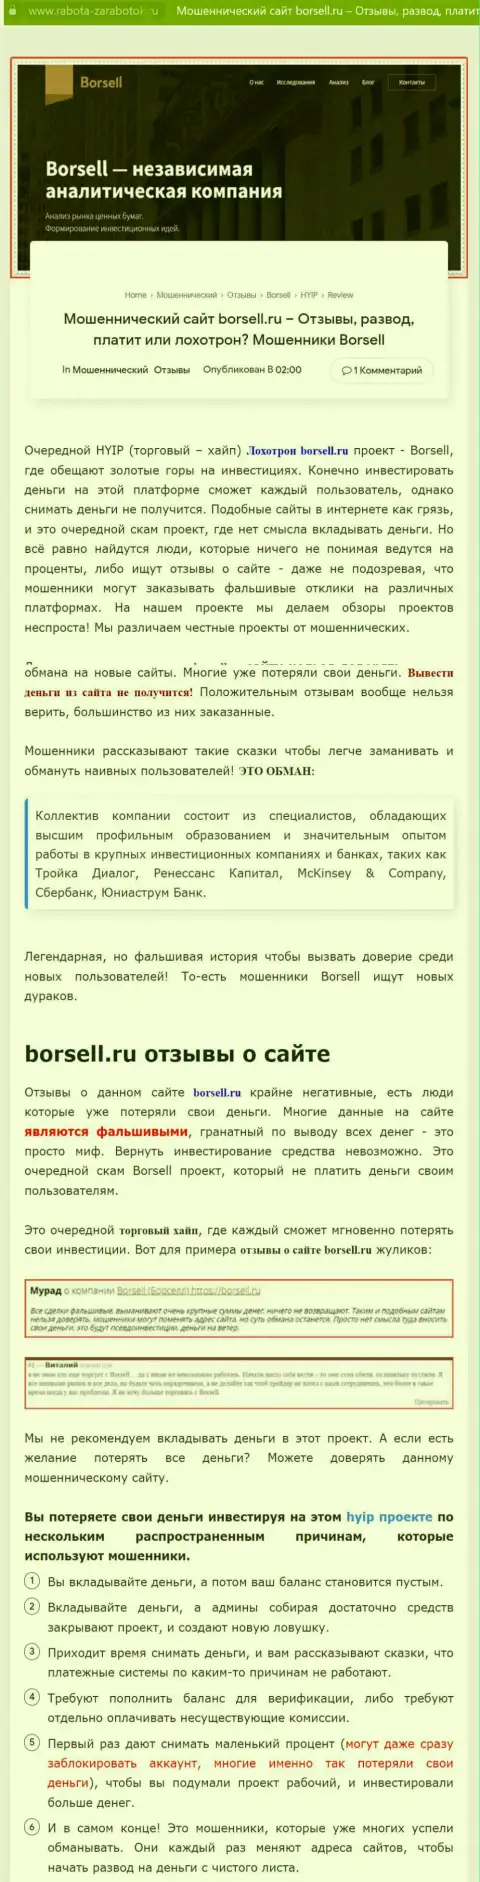 Подробно посмотрите предложения совместной работы Borsell Ru, в компании разводят (обзор)